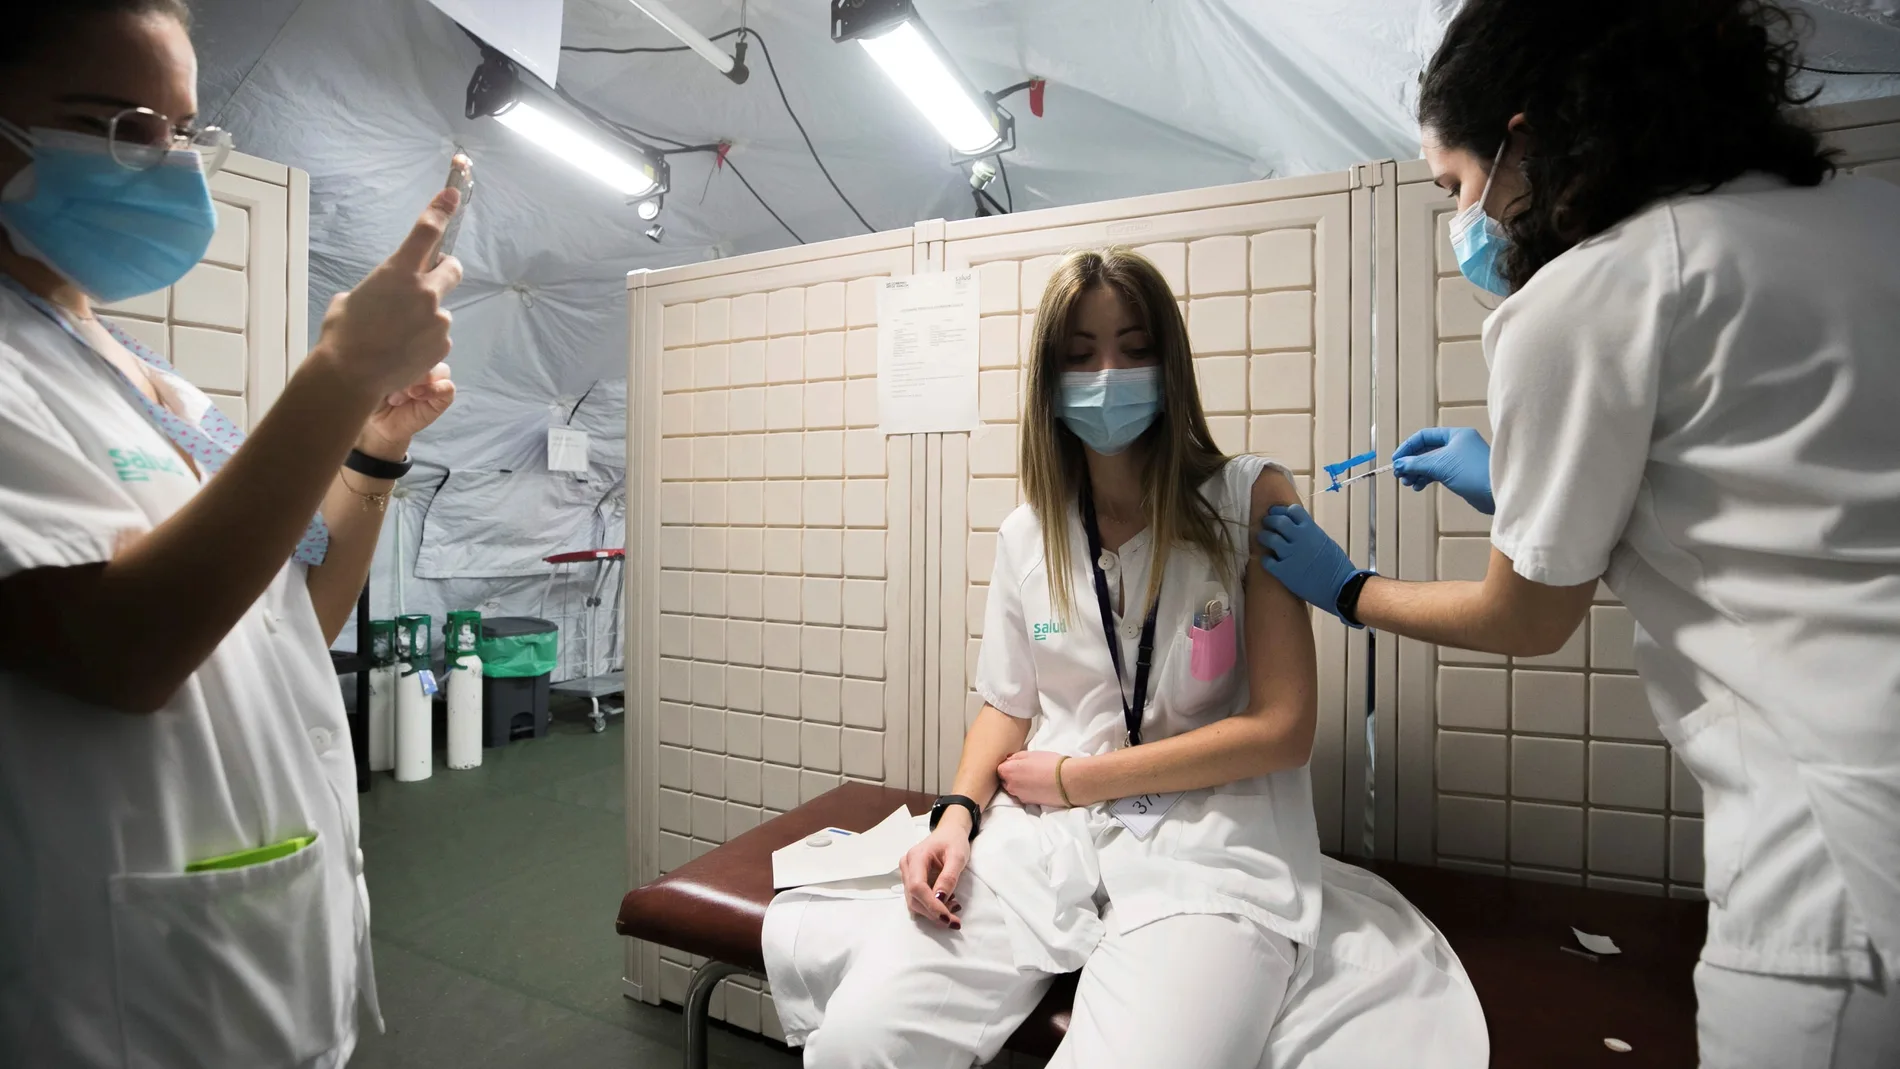 Continúa la vacunación de personal sanitario en la carpa instalada por el Ejército en el aparcamiento del Hospital Clínico de Zaragoza.